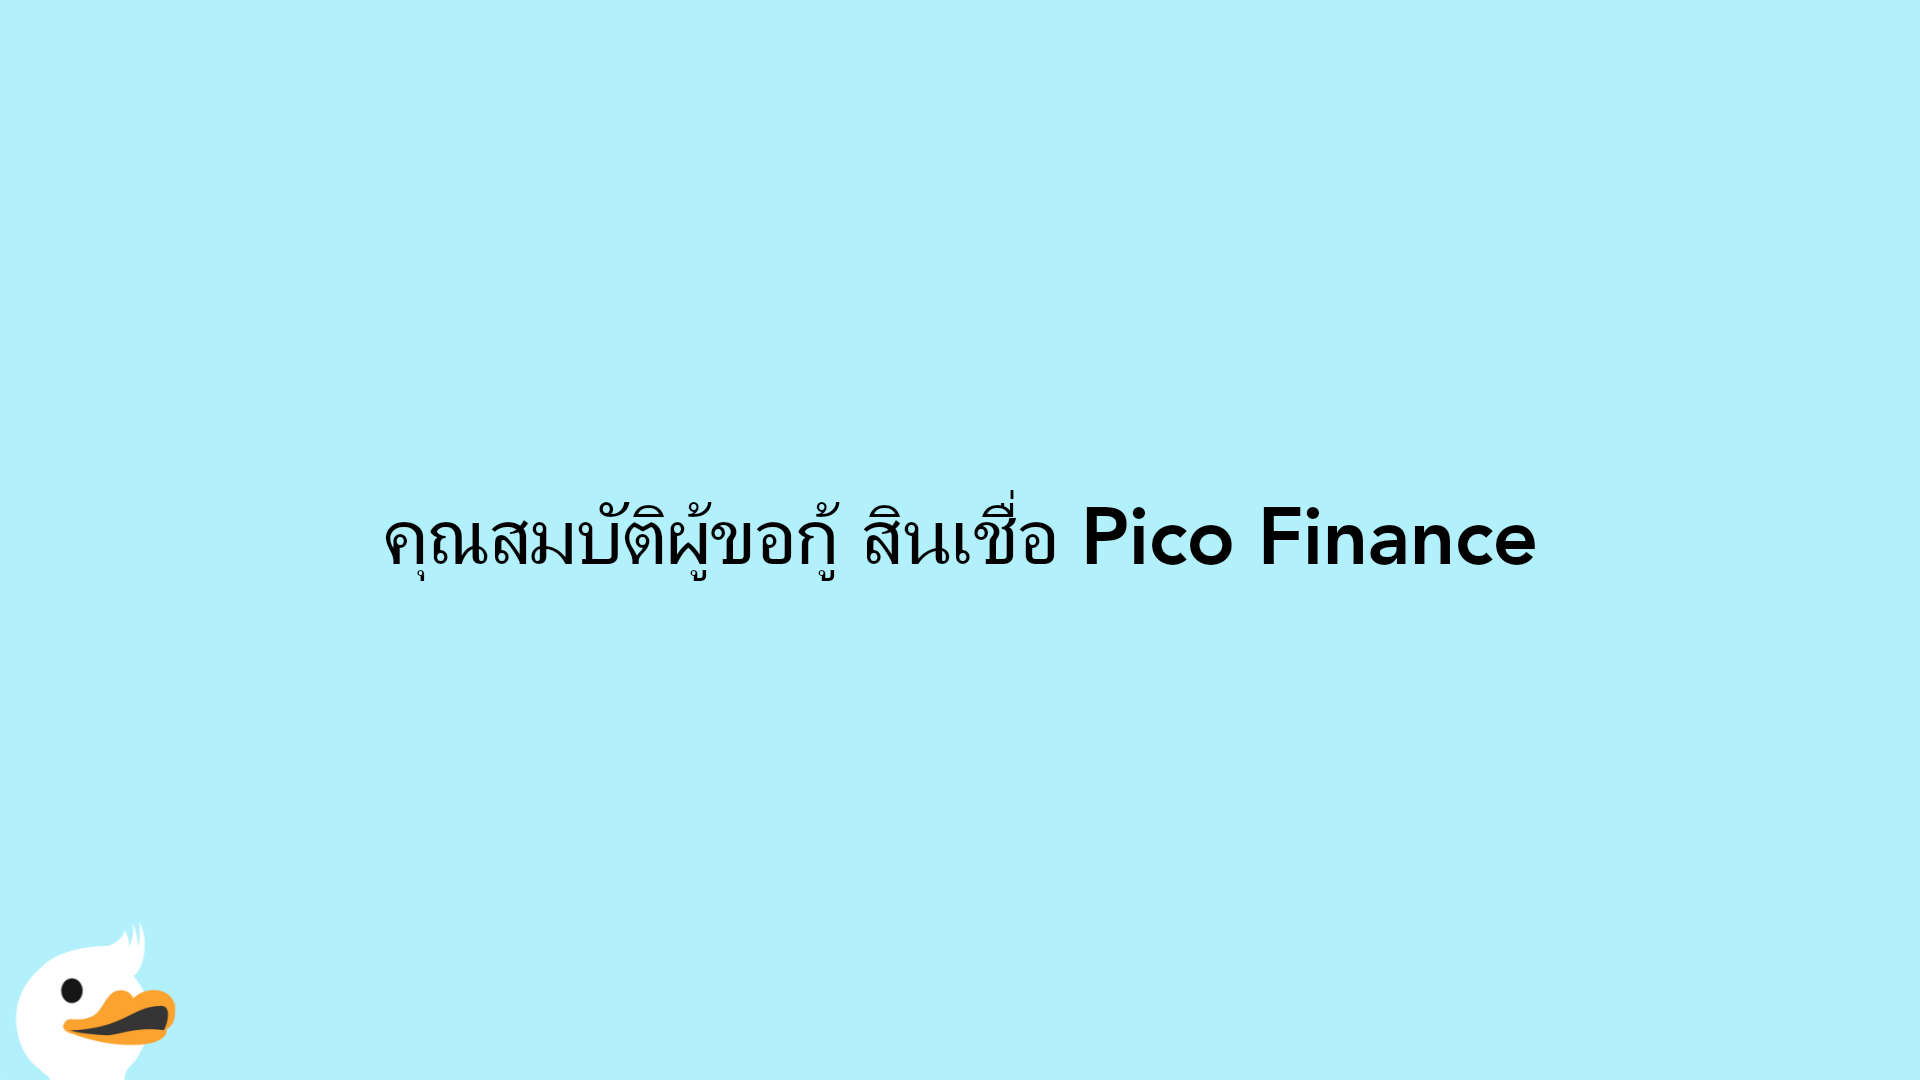 คุณสมบัติผู้ขอกู้ สินเชื่อ Pico Finance